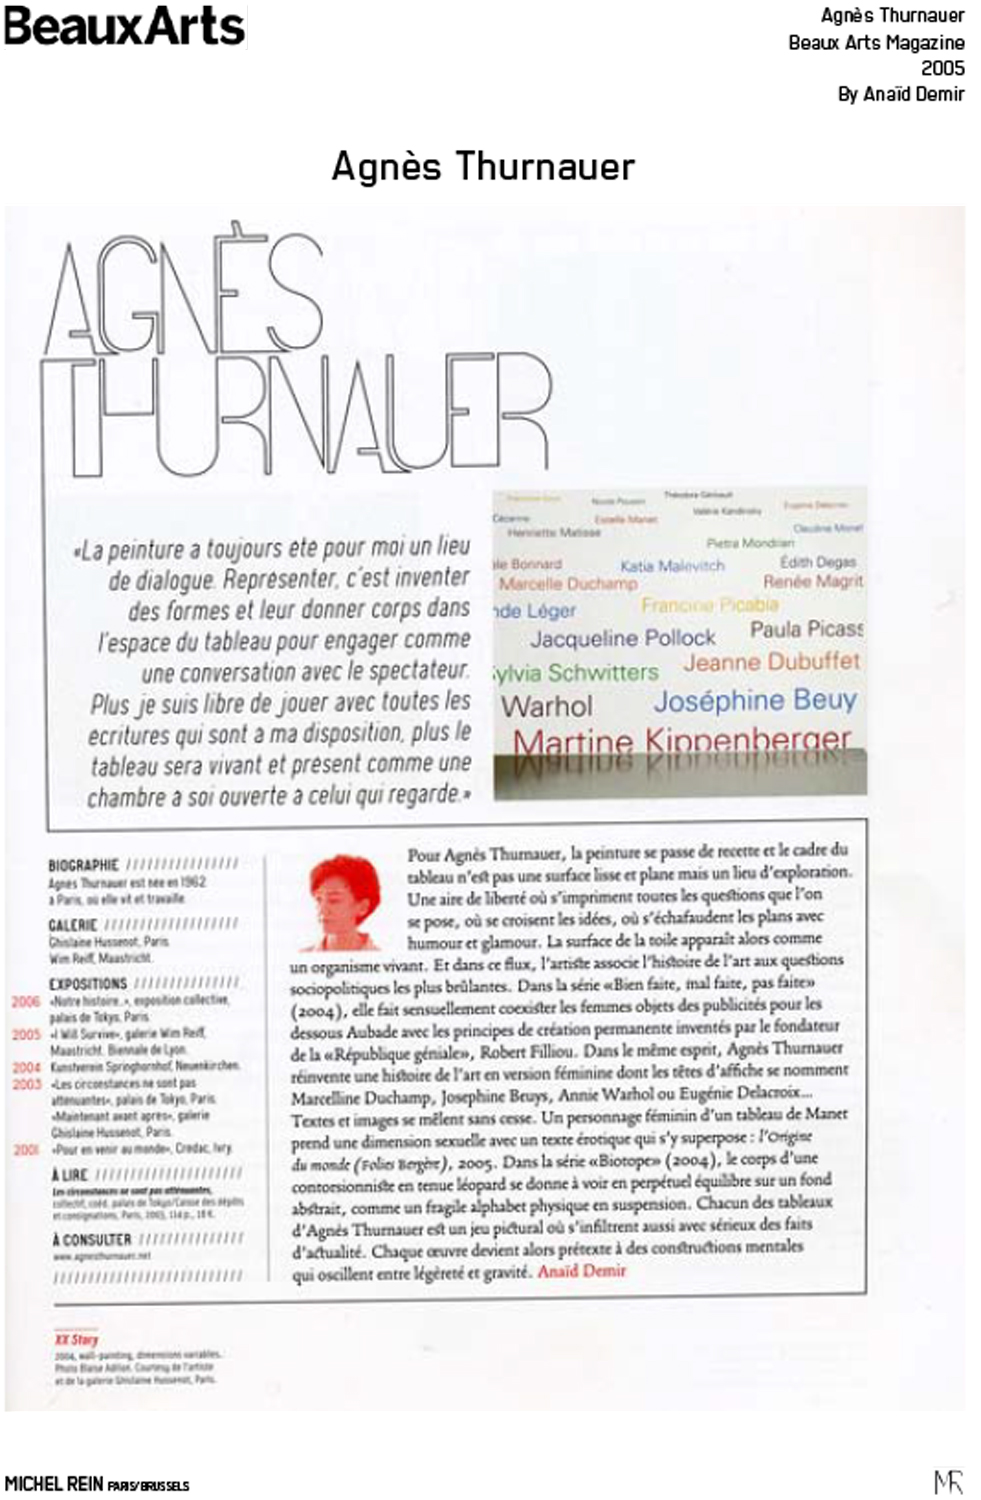 Agns Thurnauer - Beaux Arts Magazine